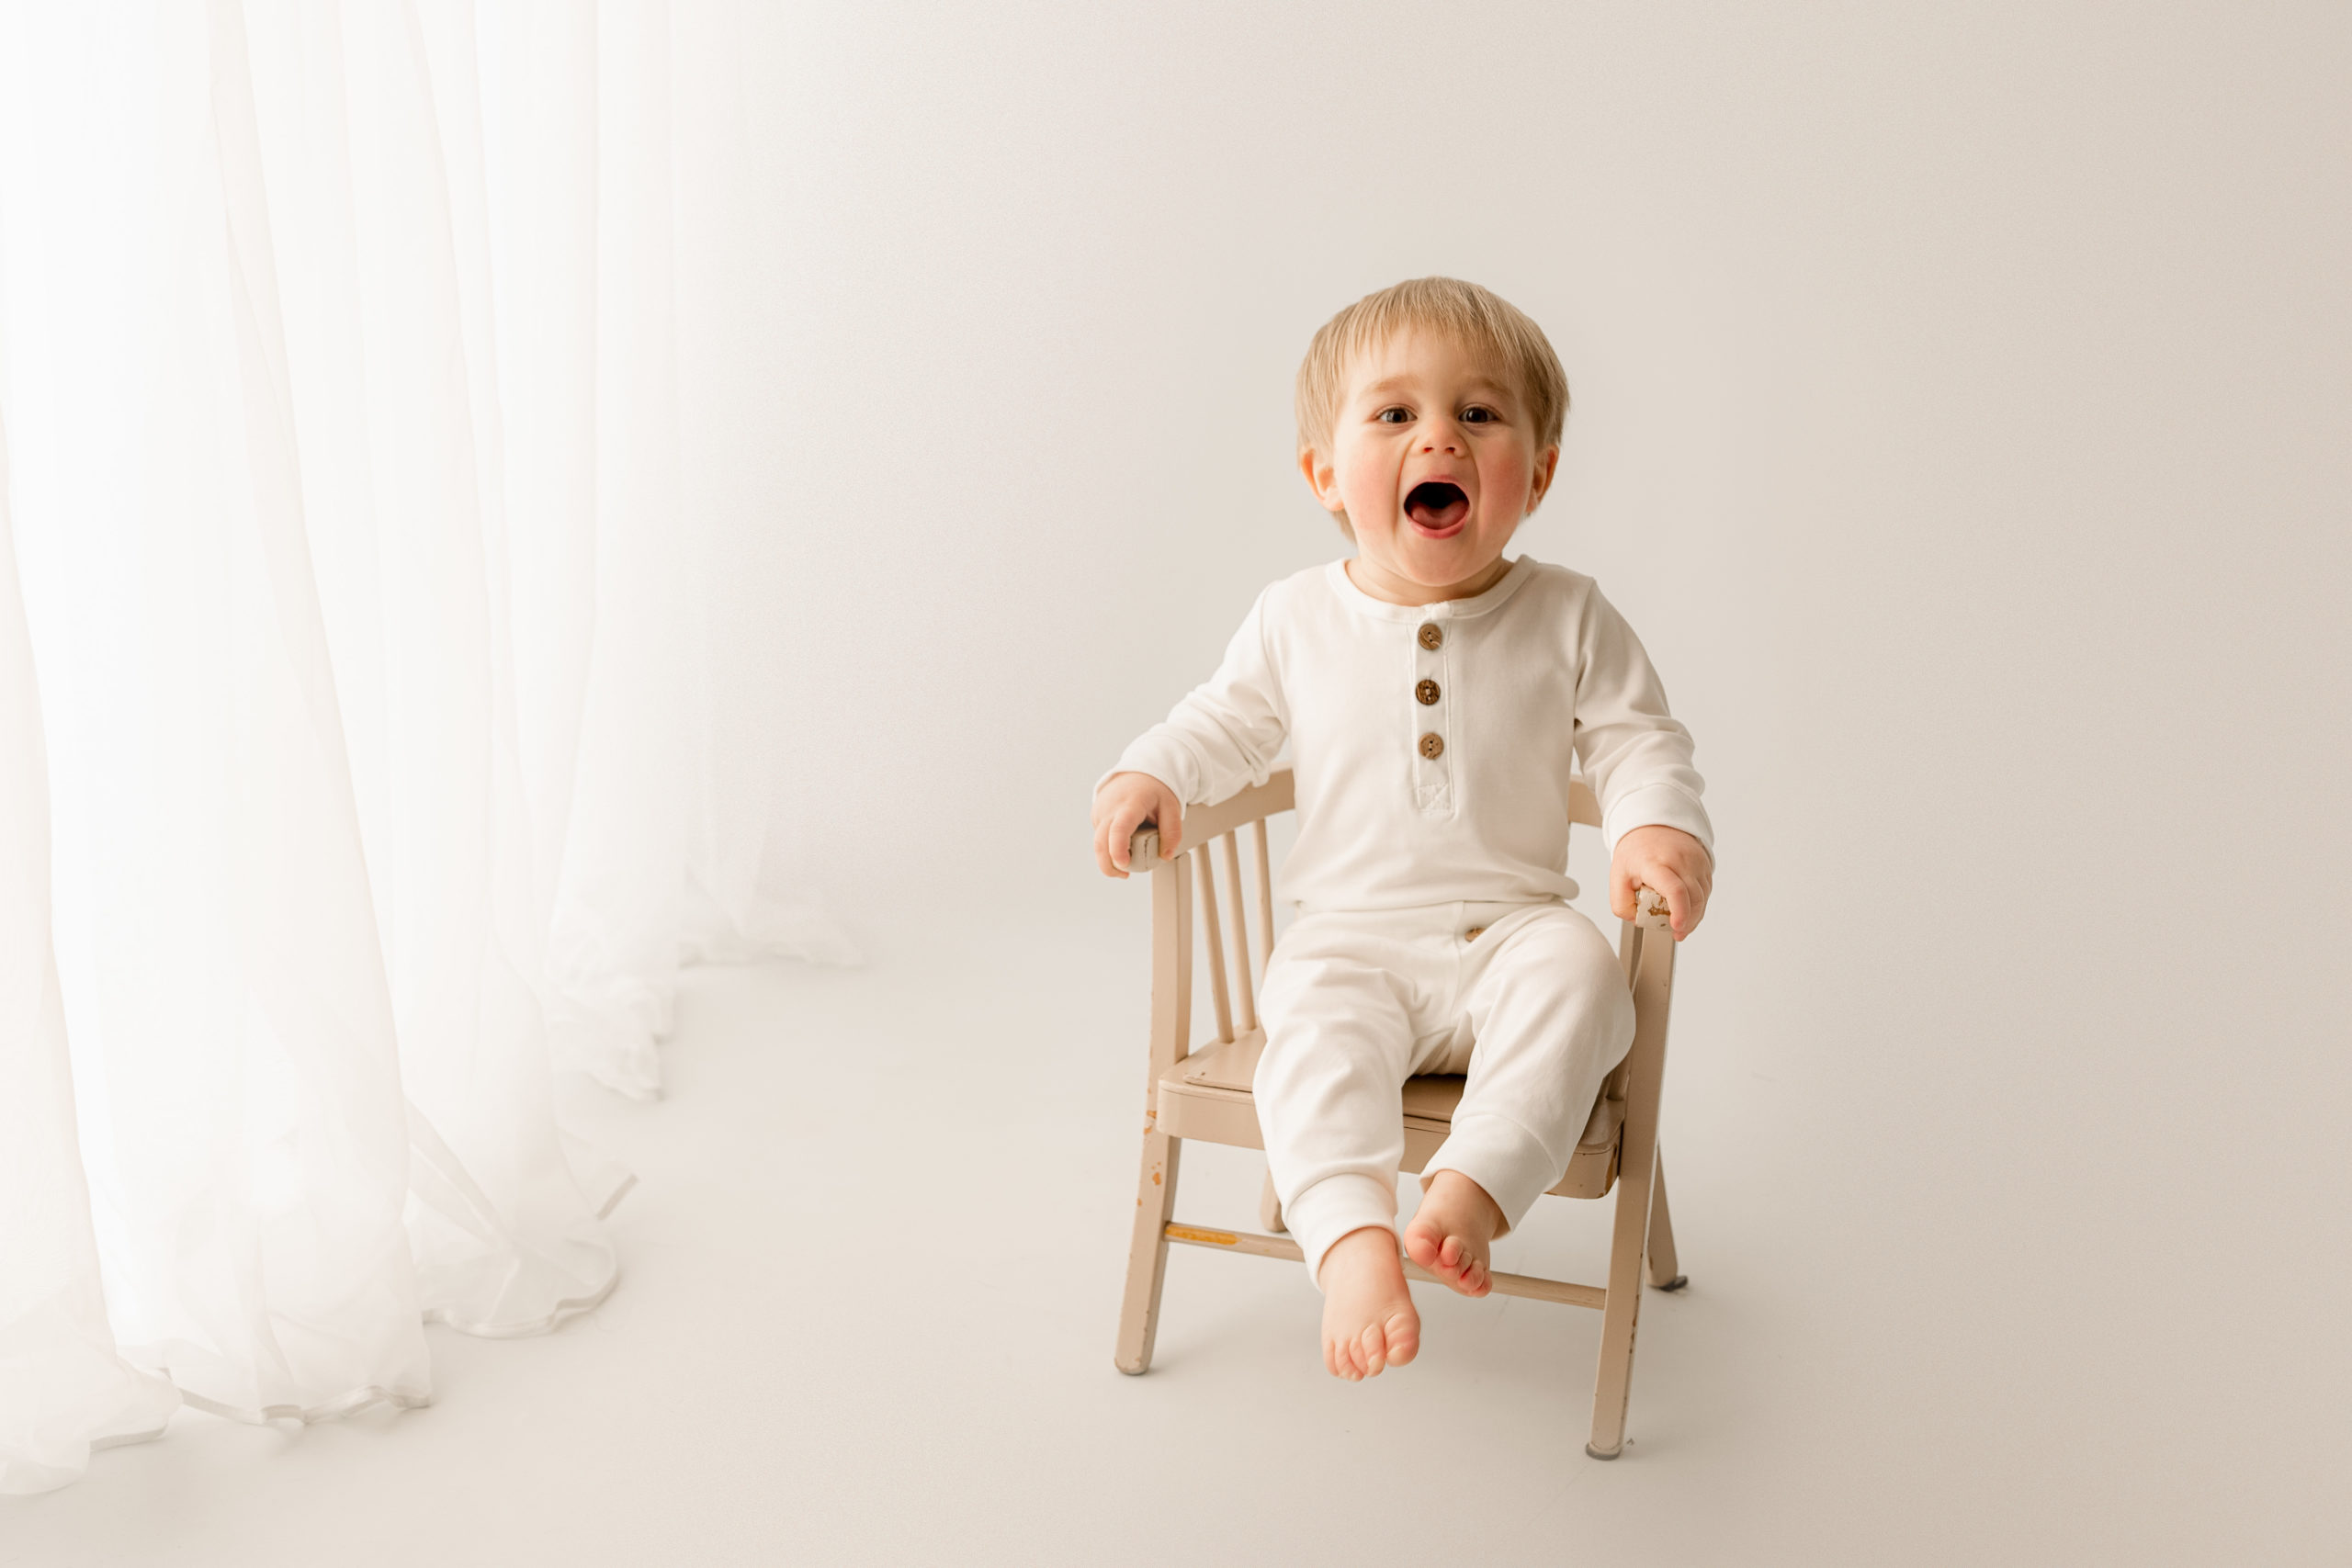 Séance photo bébé en studio dans un décors blanc et neutre